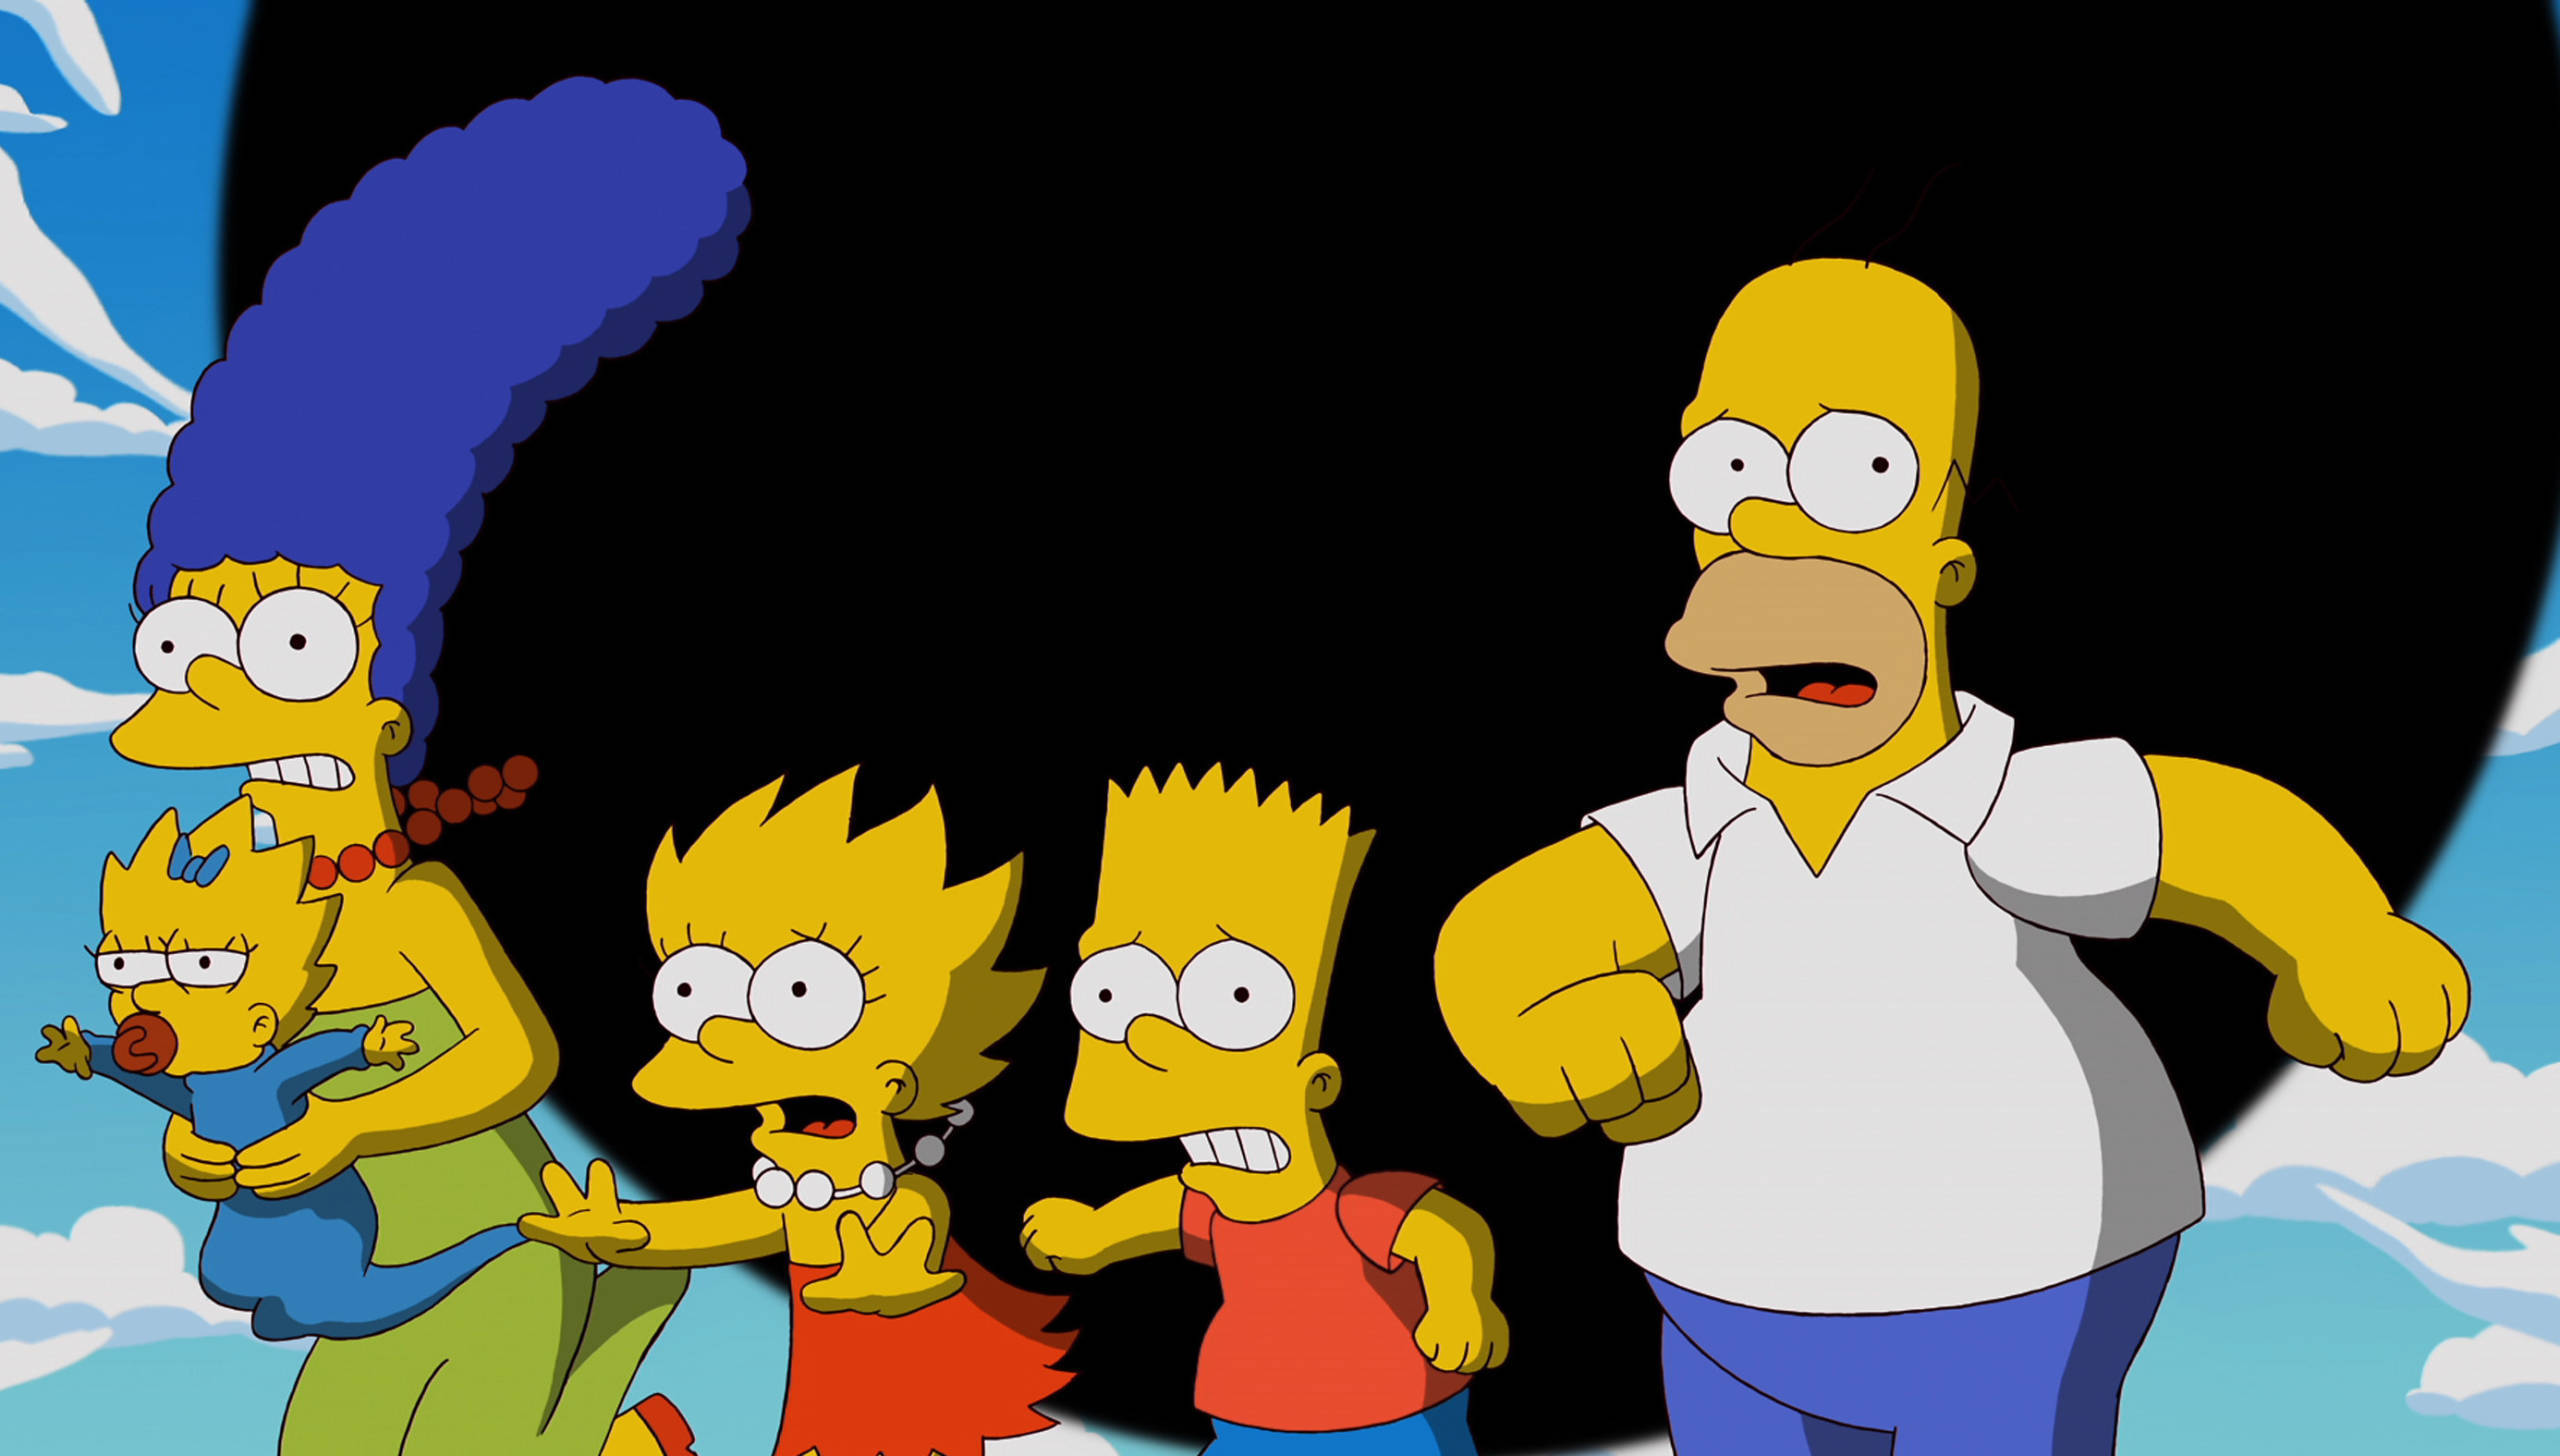 Ein Bild, das symbolischer nicht sein könnte: Die Simpsons flüchten vor einem schwarzen Loch